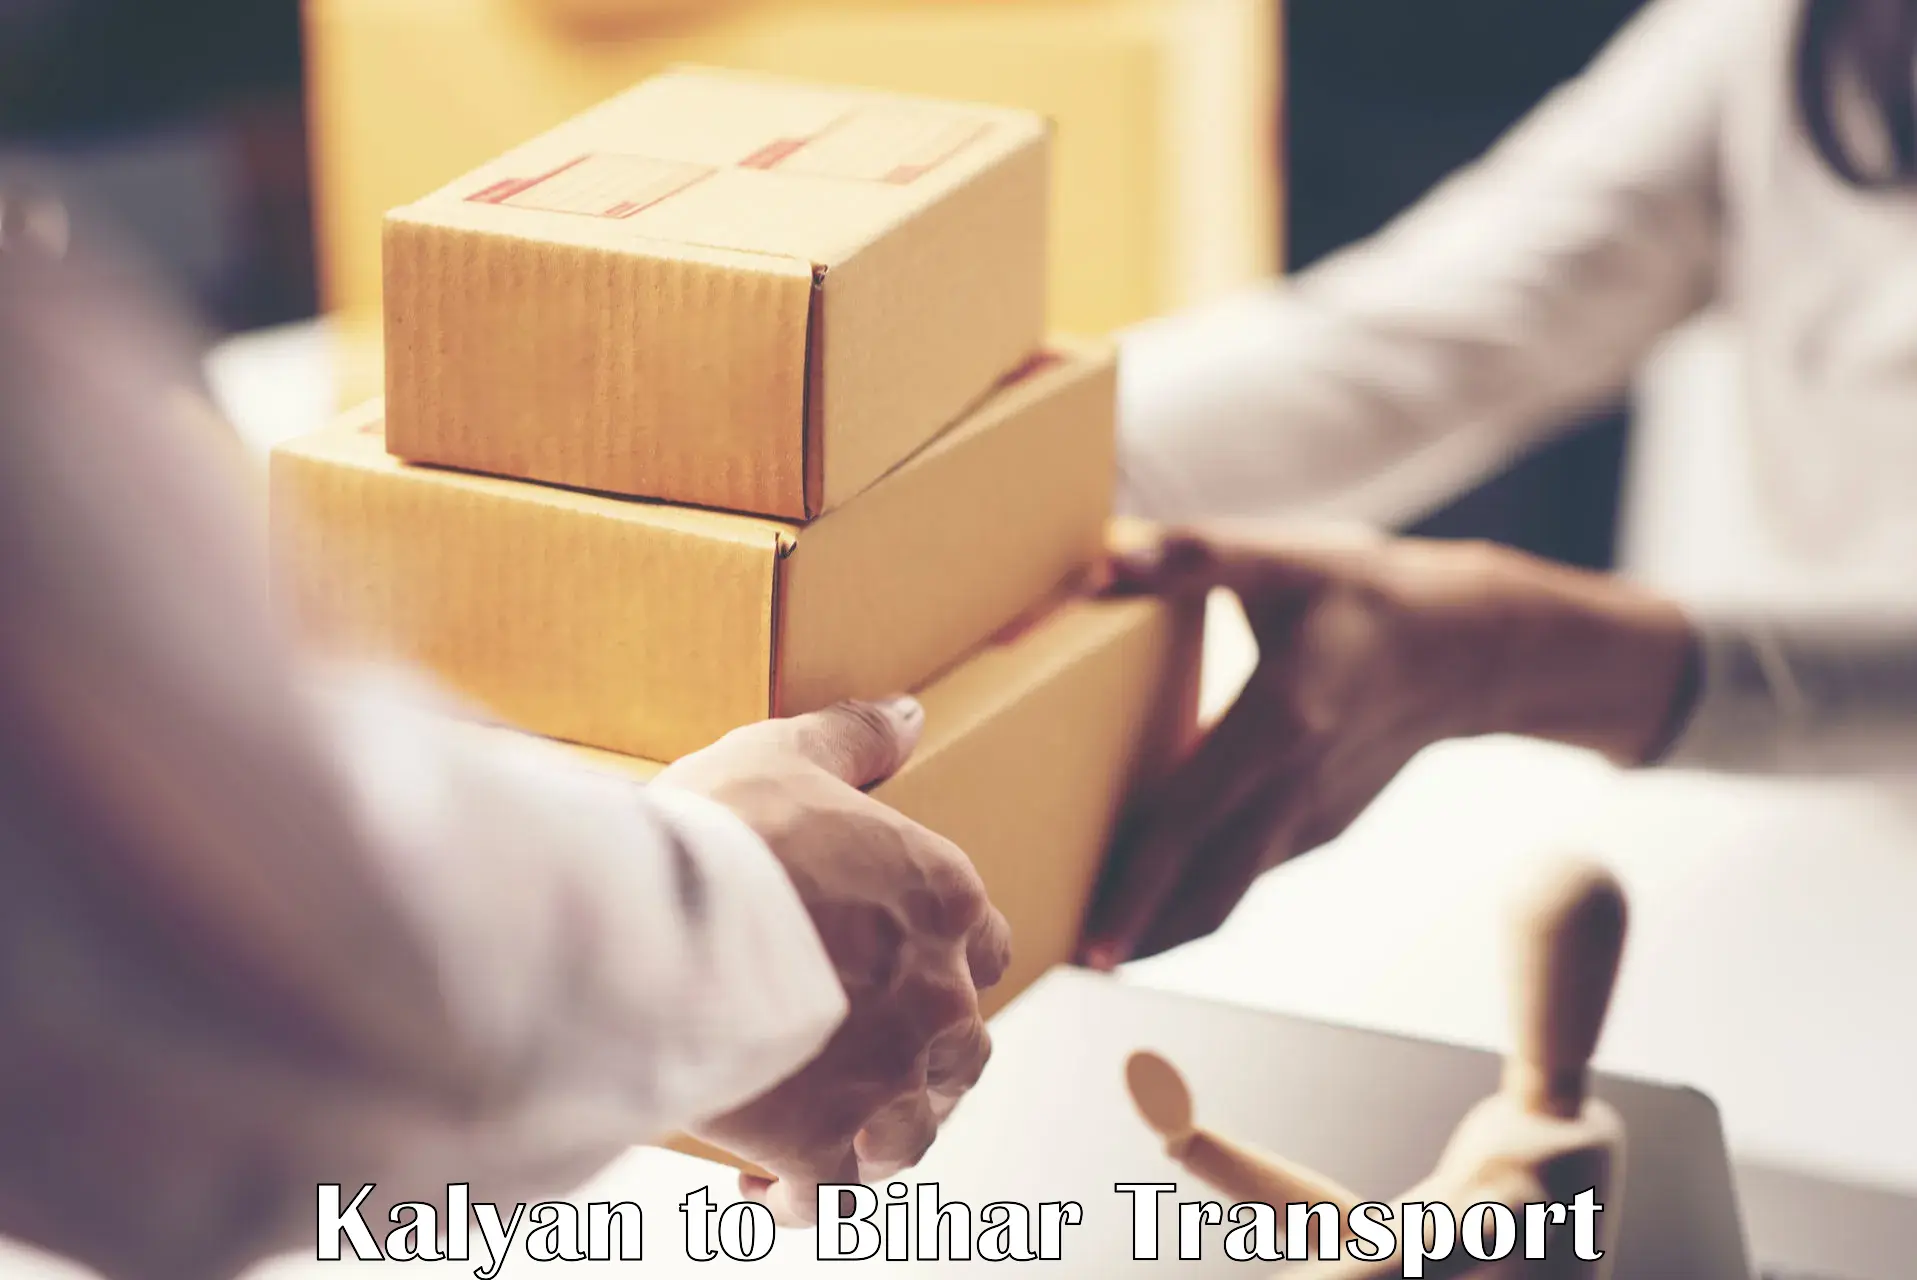 Furniture transport service in Kalyan to Sugauna